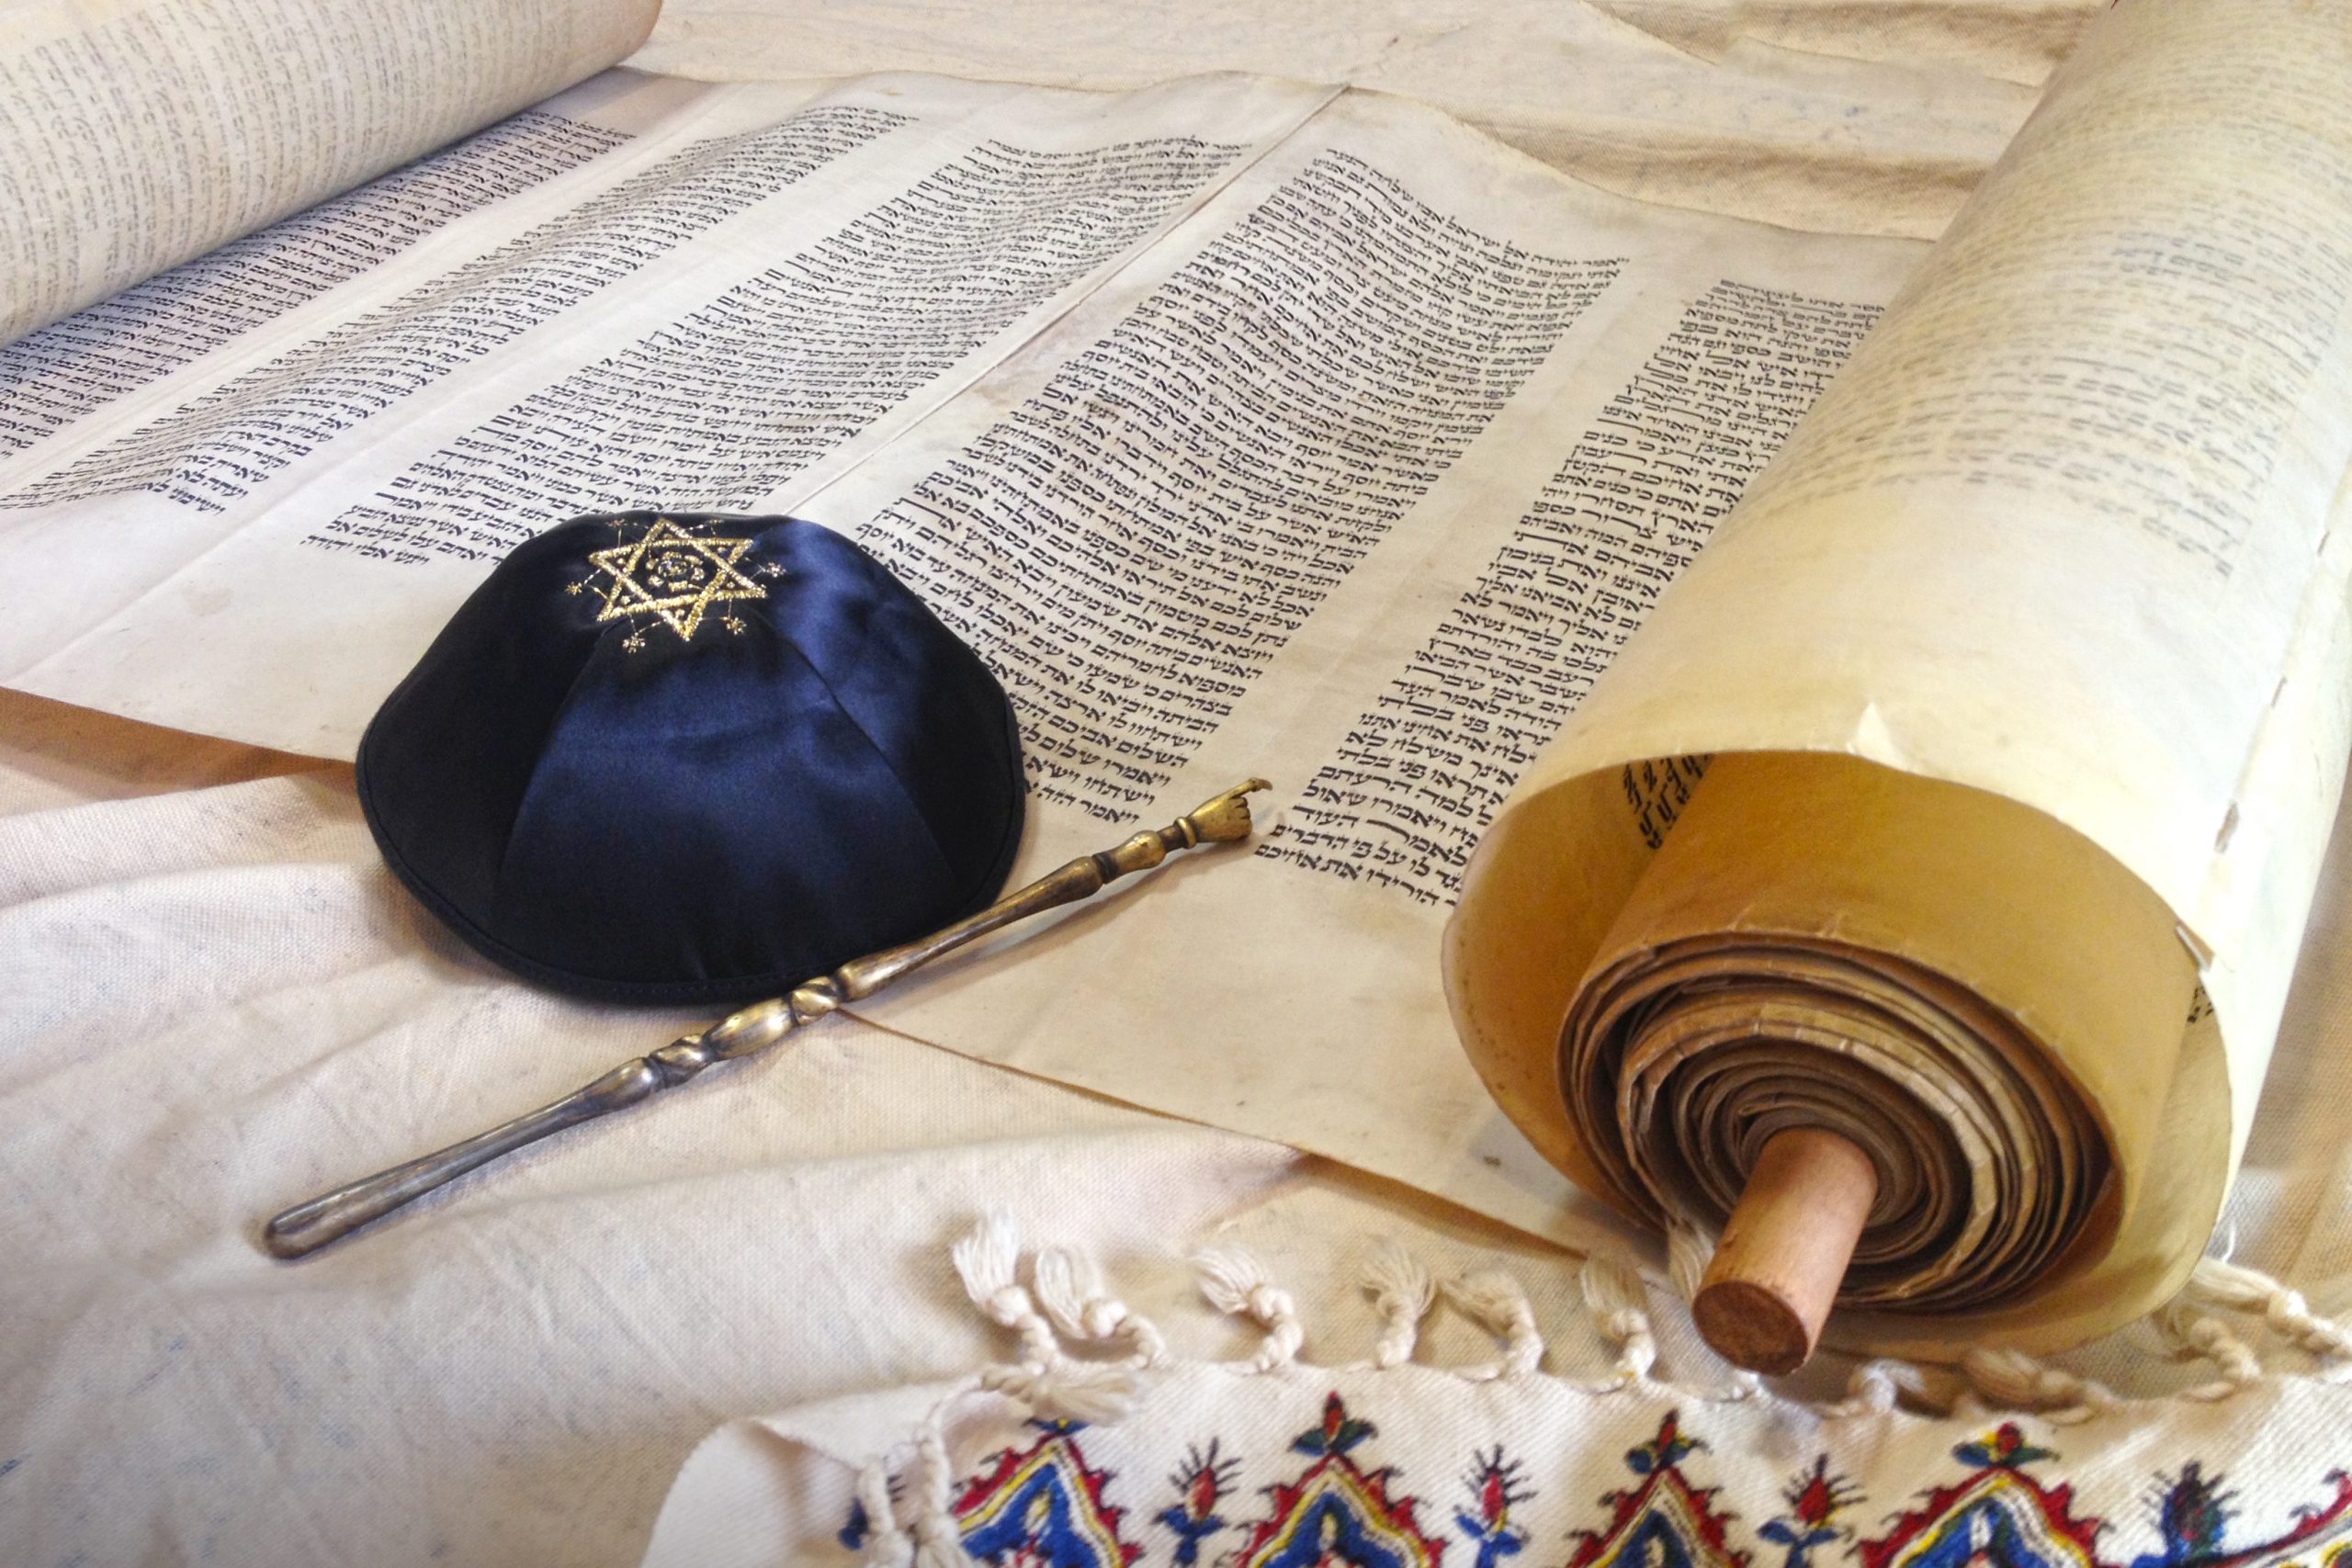 727 Jahre nach seinem Tod bewerten wir das Erbe von Rabbi Meir von Rothenburg neu